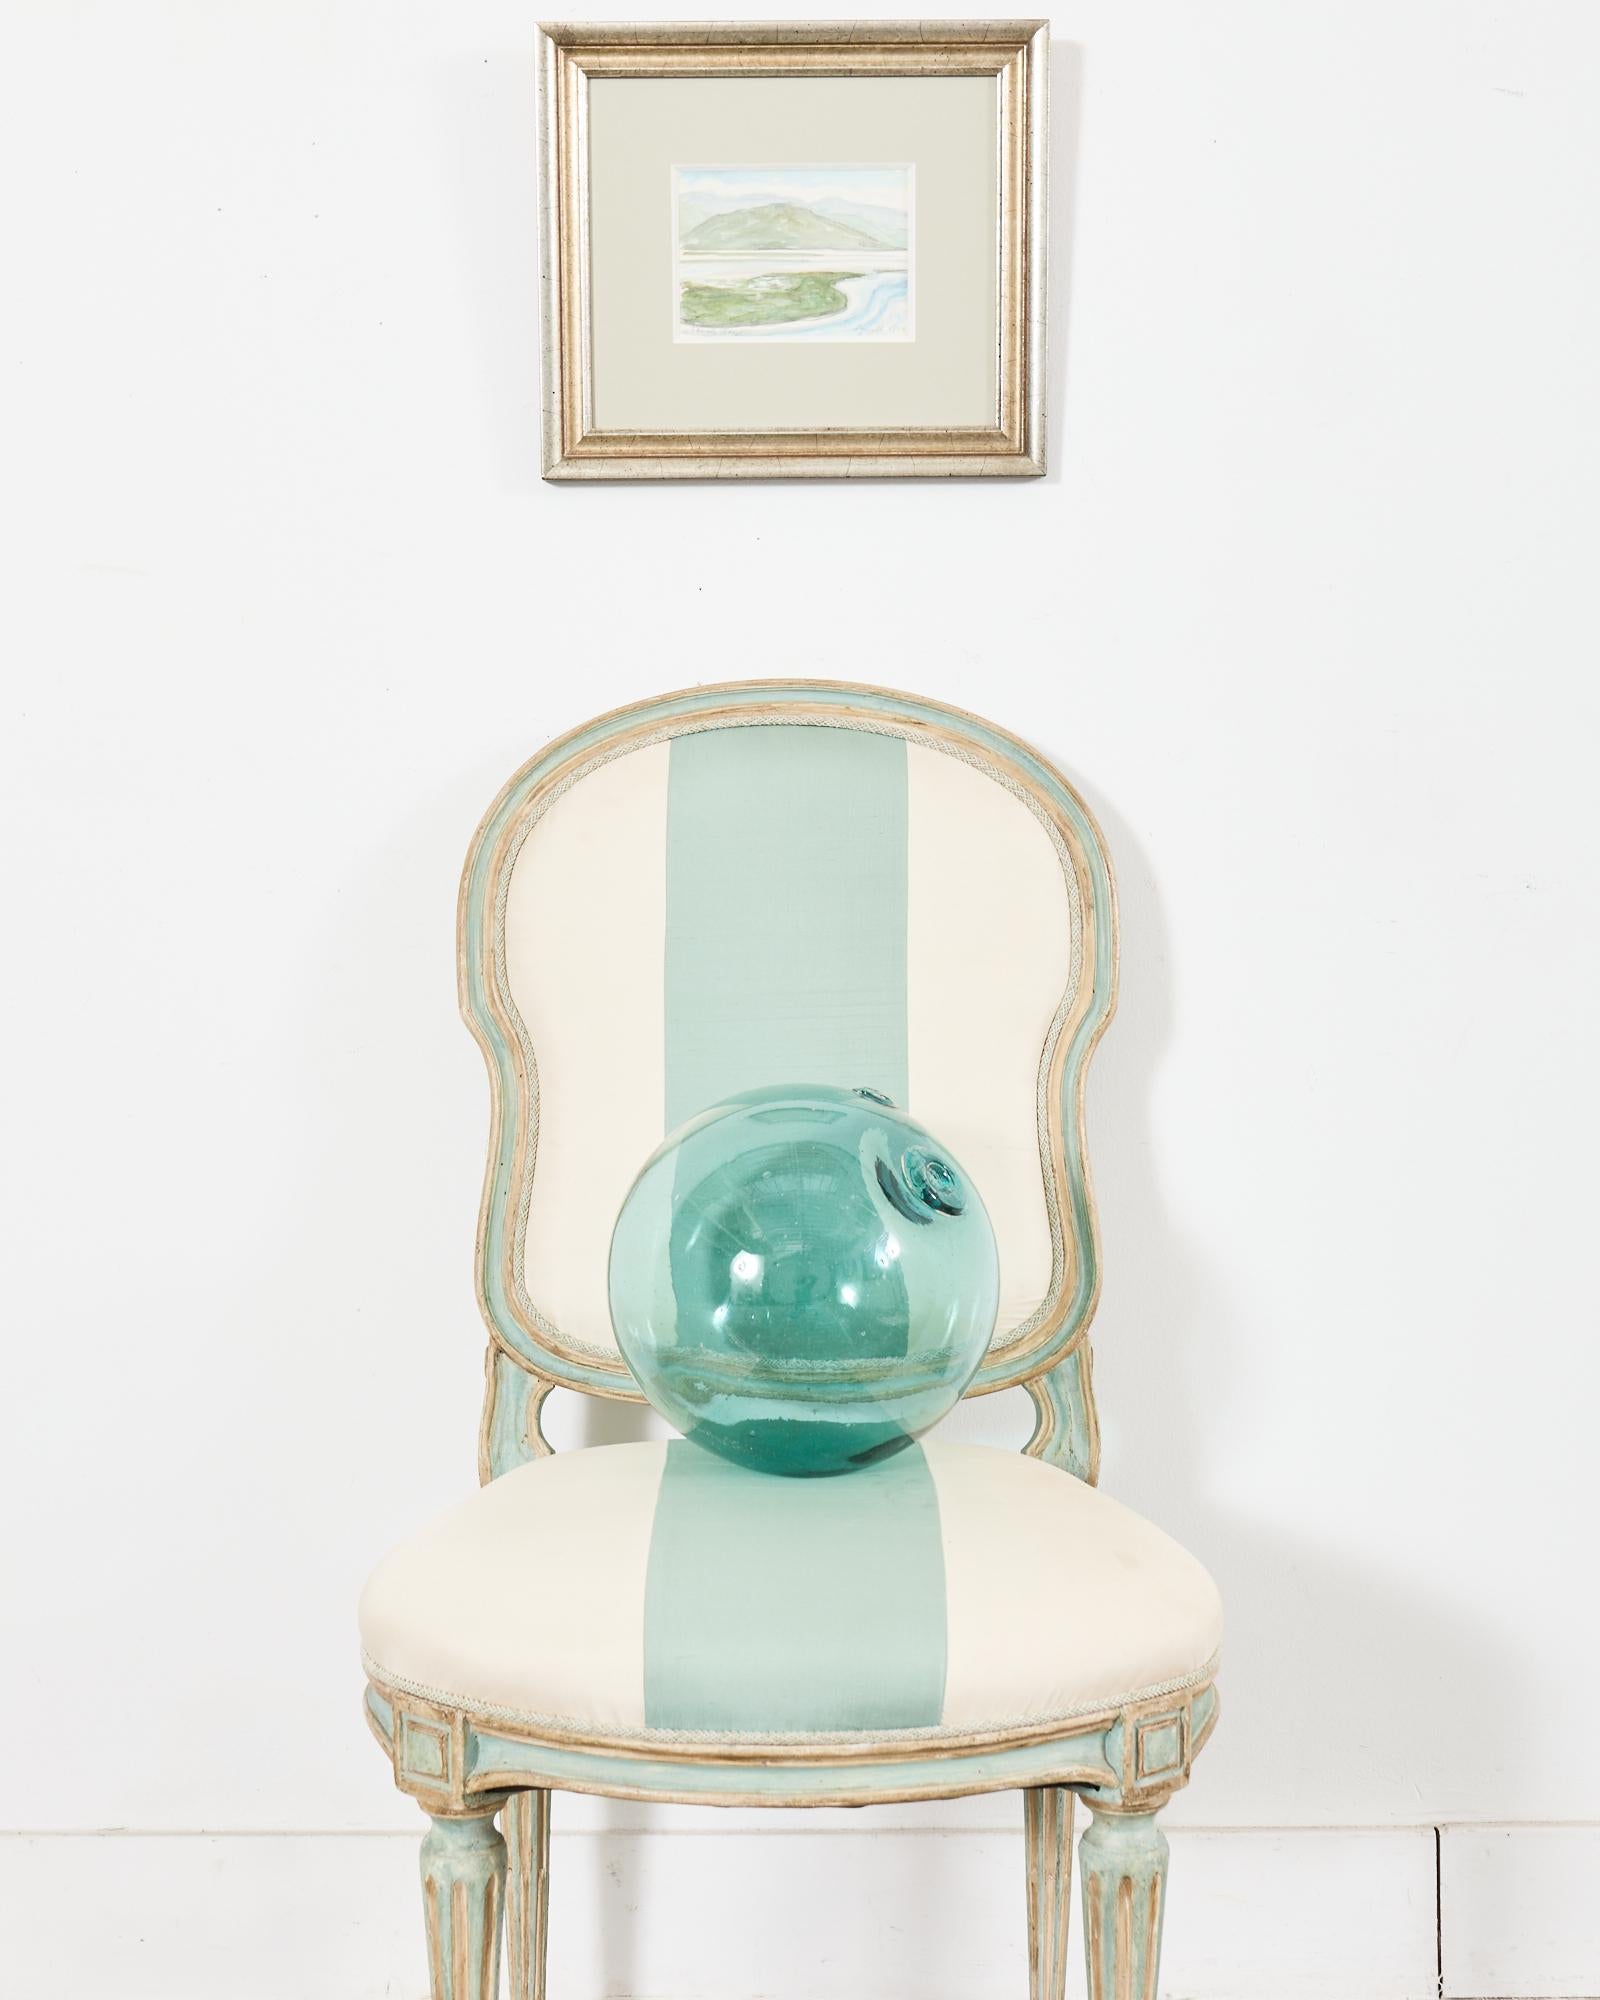 Preciosa silla de comedor envejecida de estilo neoclásico francés Luis XVI, fabricada por Dennis & Leen Hollywood, California. La silla auxiliar Luis XVI presenta una pátina pintada intencionadamente envejecida en un verde huevo de petirrojo o